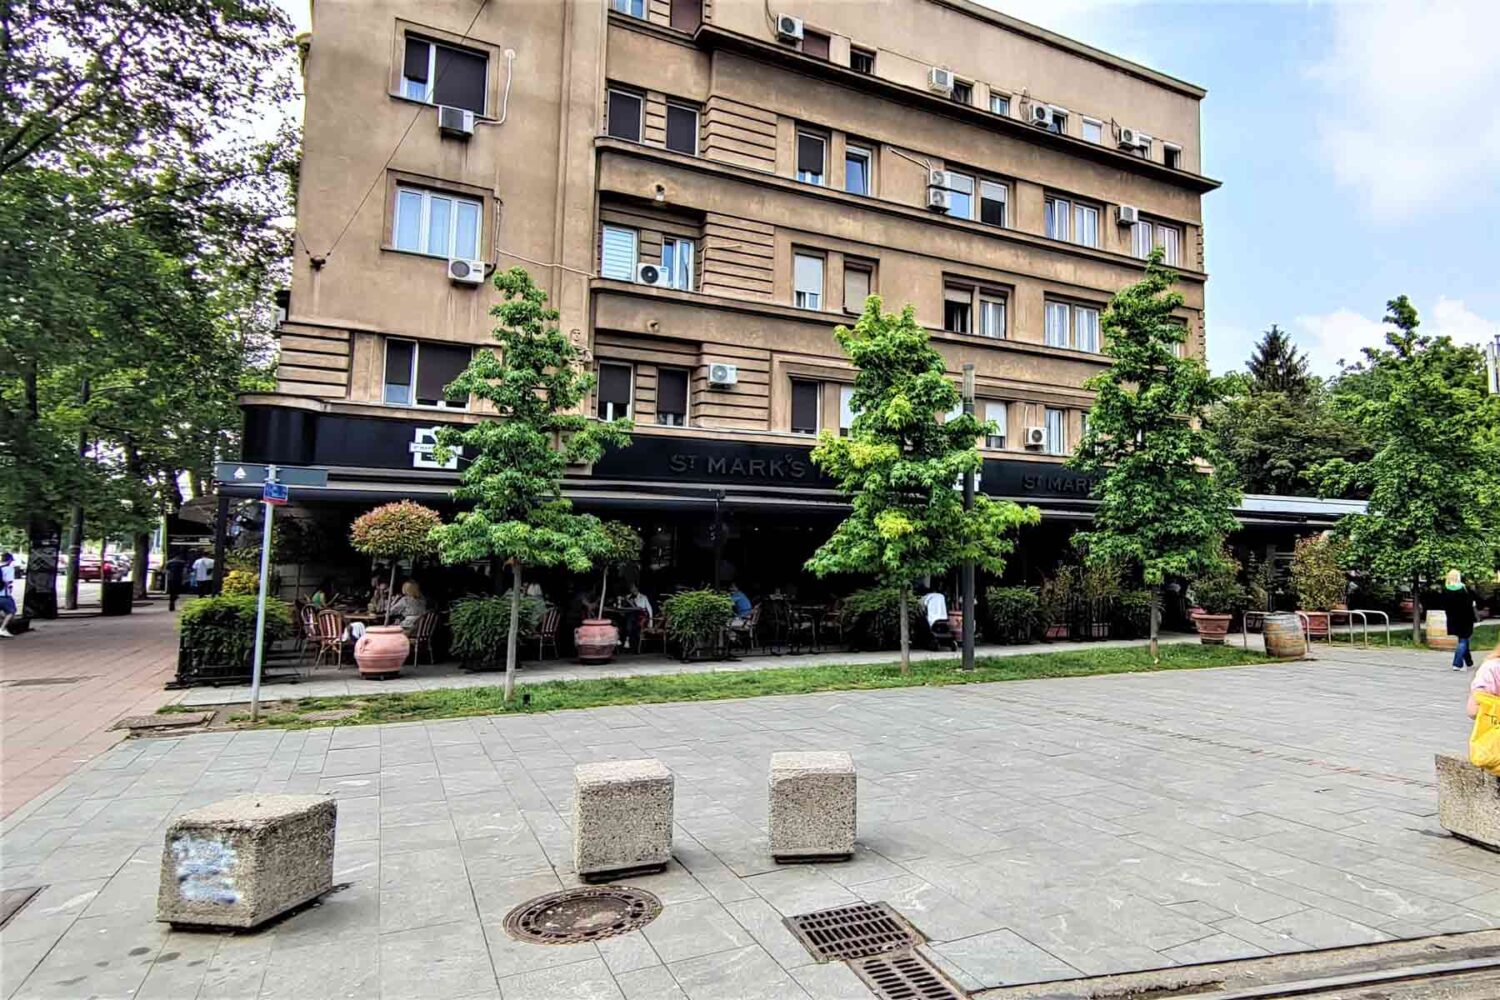 Restoran St. Mark's Place je jedan od najboljih restorana Beograda